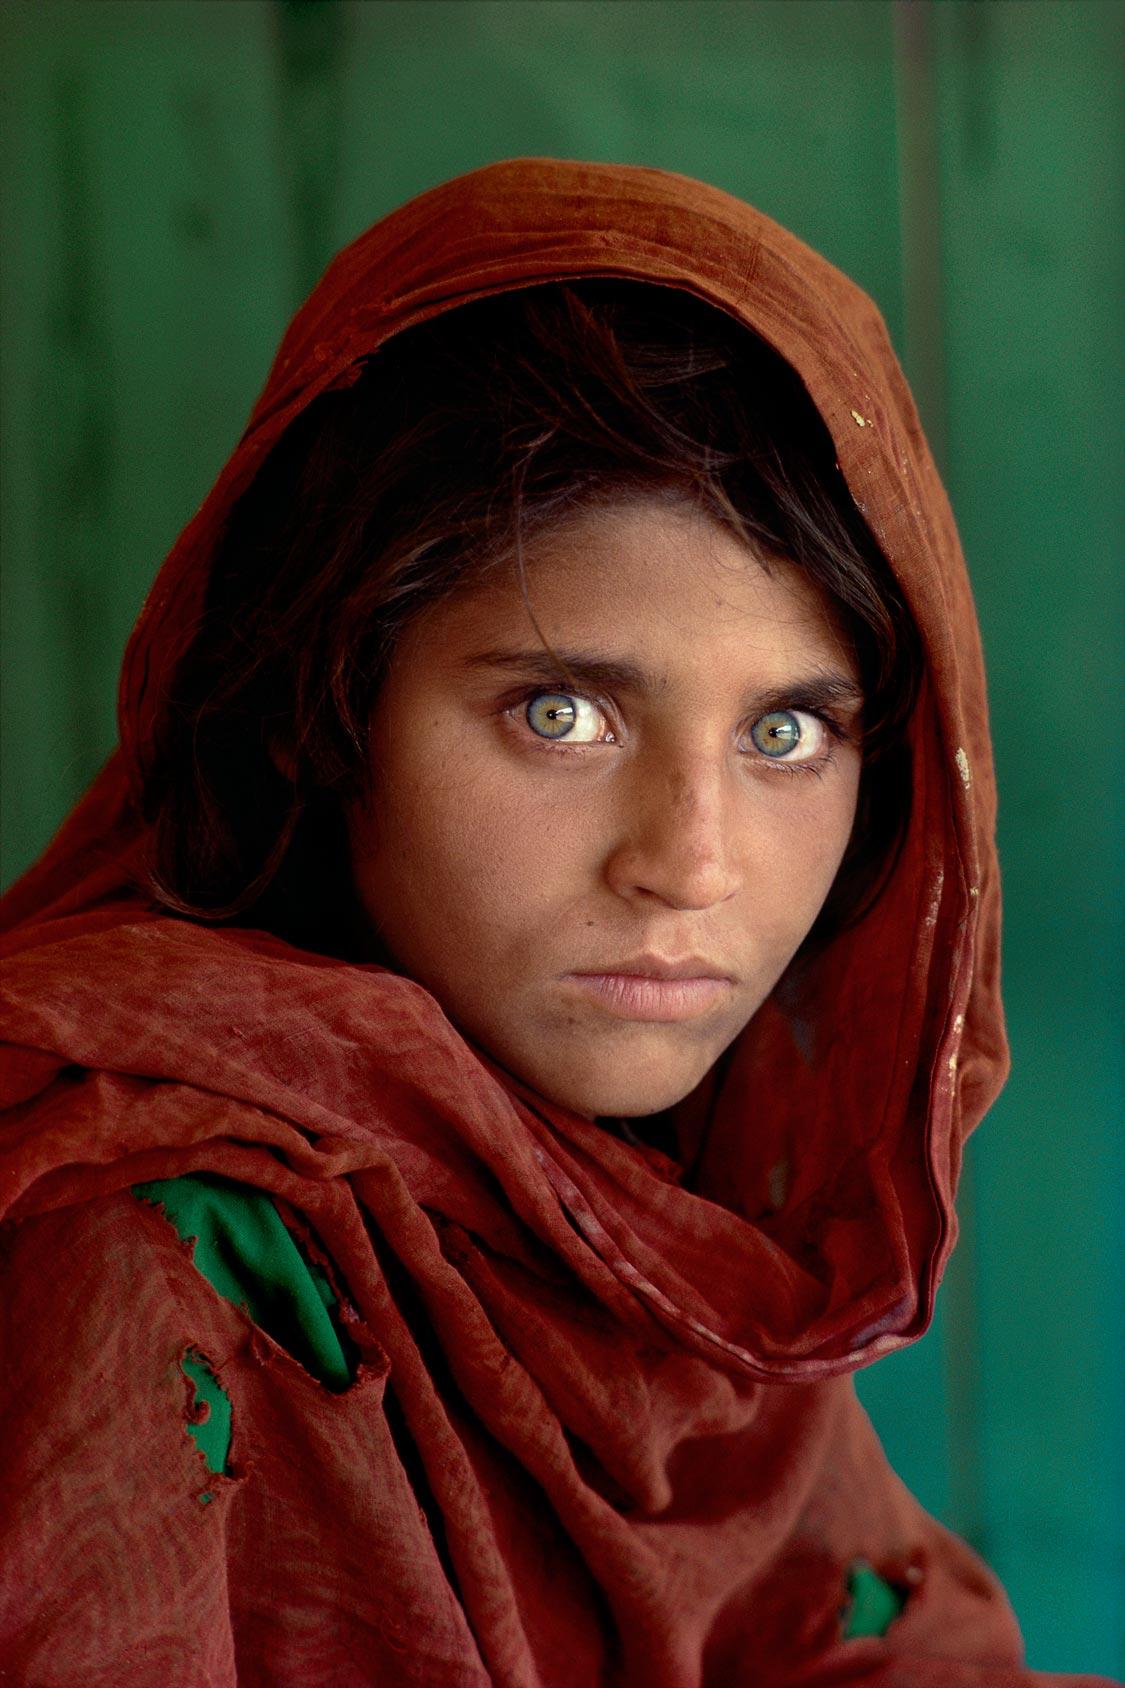  阿富汗女孩，来自摄影师Steve McCurry。<br/>相片中人物为阿富汗的一名女孩夏帕特·古拉，也被称为阿富汗的蒙娜丽莎。 